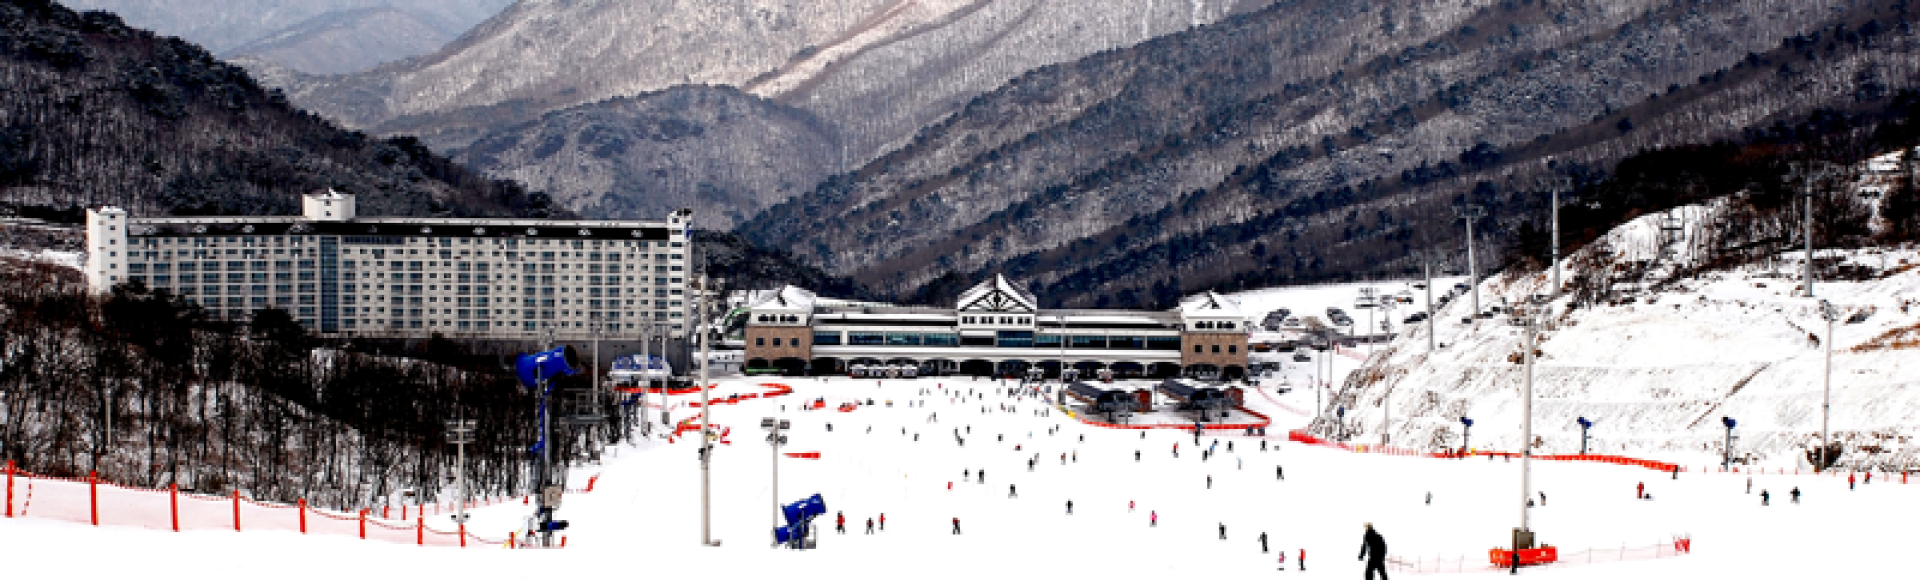 韓國-釜山伊甸園山谷滑雪一日遊